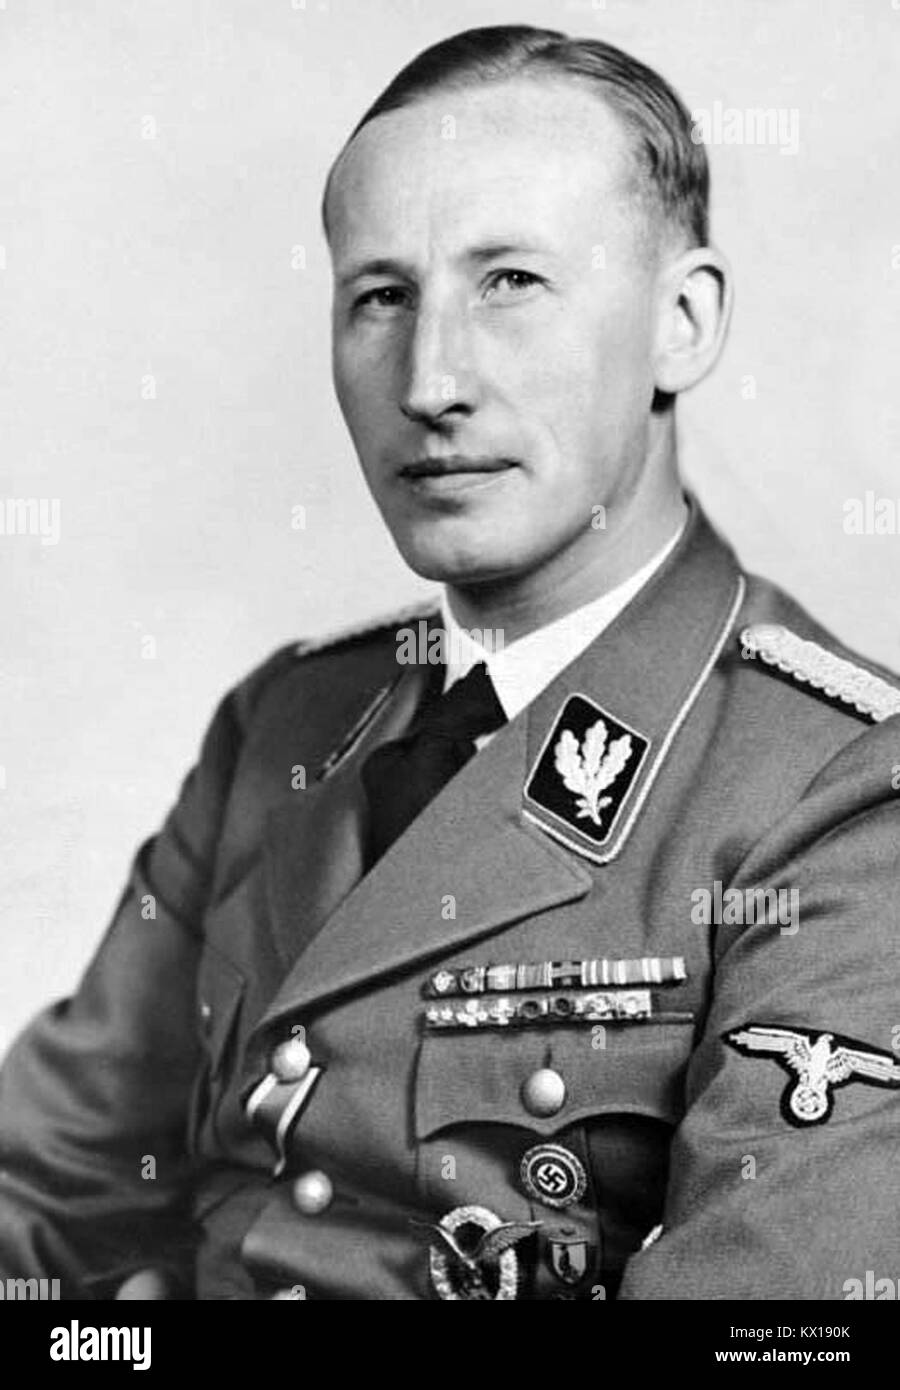 Reinhard Tristan Eugen Heydrich était un haut fonctionnaire nazi pendant la Seconde Guerre mondiale, et d'un principal architecte de l'Holocauste. Il était un général SS-Obergruppenführer und der Polizei (Chef de groupe senior et général de la police) ainsi que le chef de l'Office de sécurité du Reich (y compris la Gestapo, Kripo, et SD). Banque D'Images